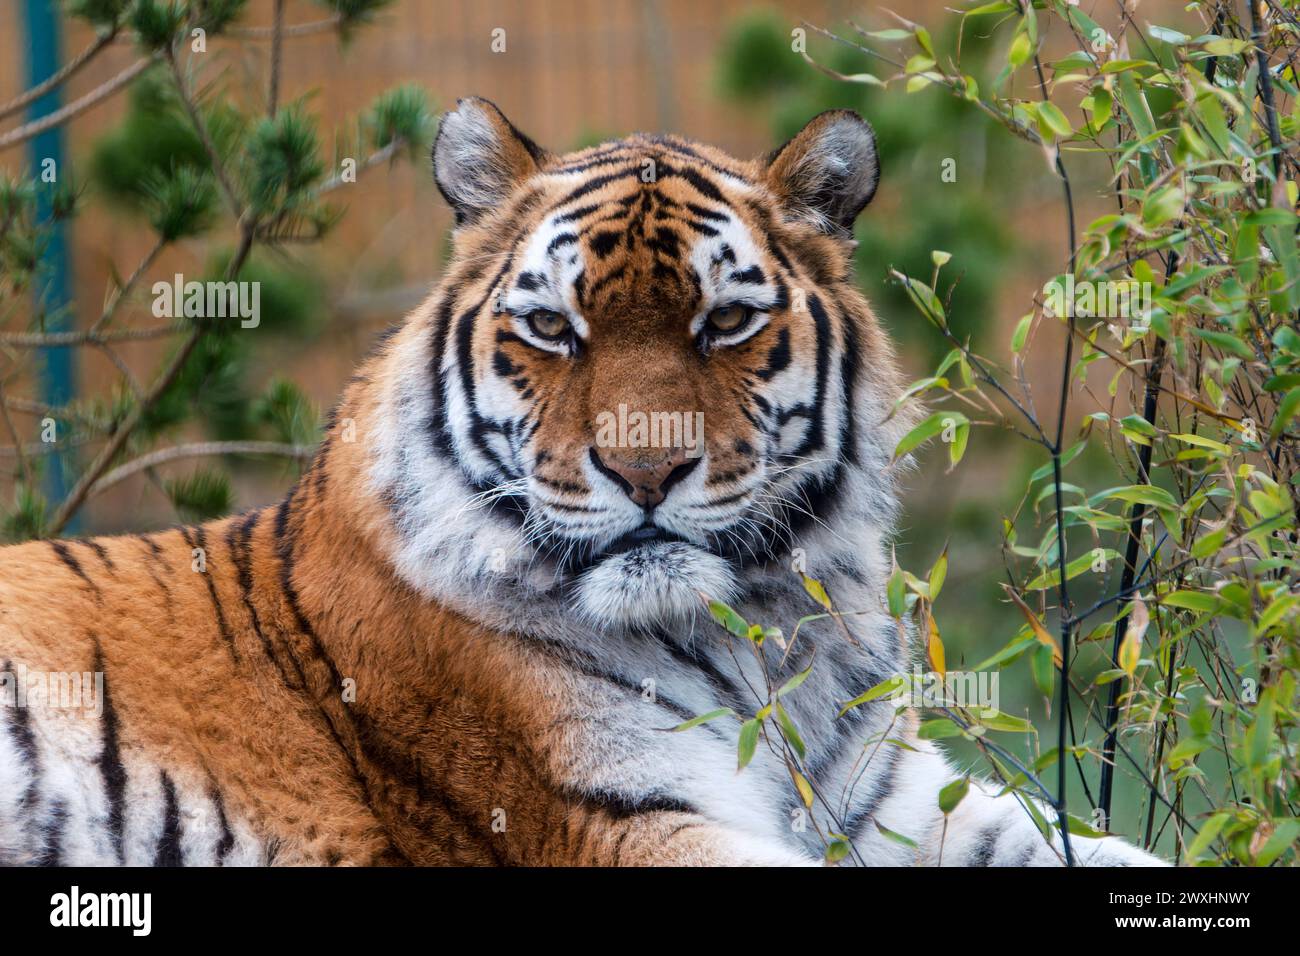 Halten Sie die majestätische Natur mit diesem atemberaubenden Bild eines Amur-Tigers fest. Die detailreiche Nahaufnahme zeigt die ikonischen orangefarbenen und schwarzen Streifen des Tigers Stockfoto